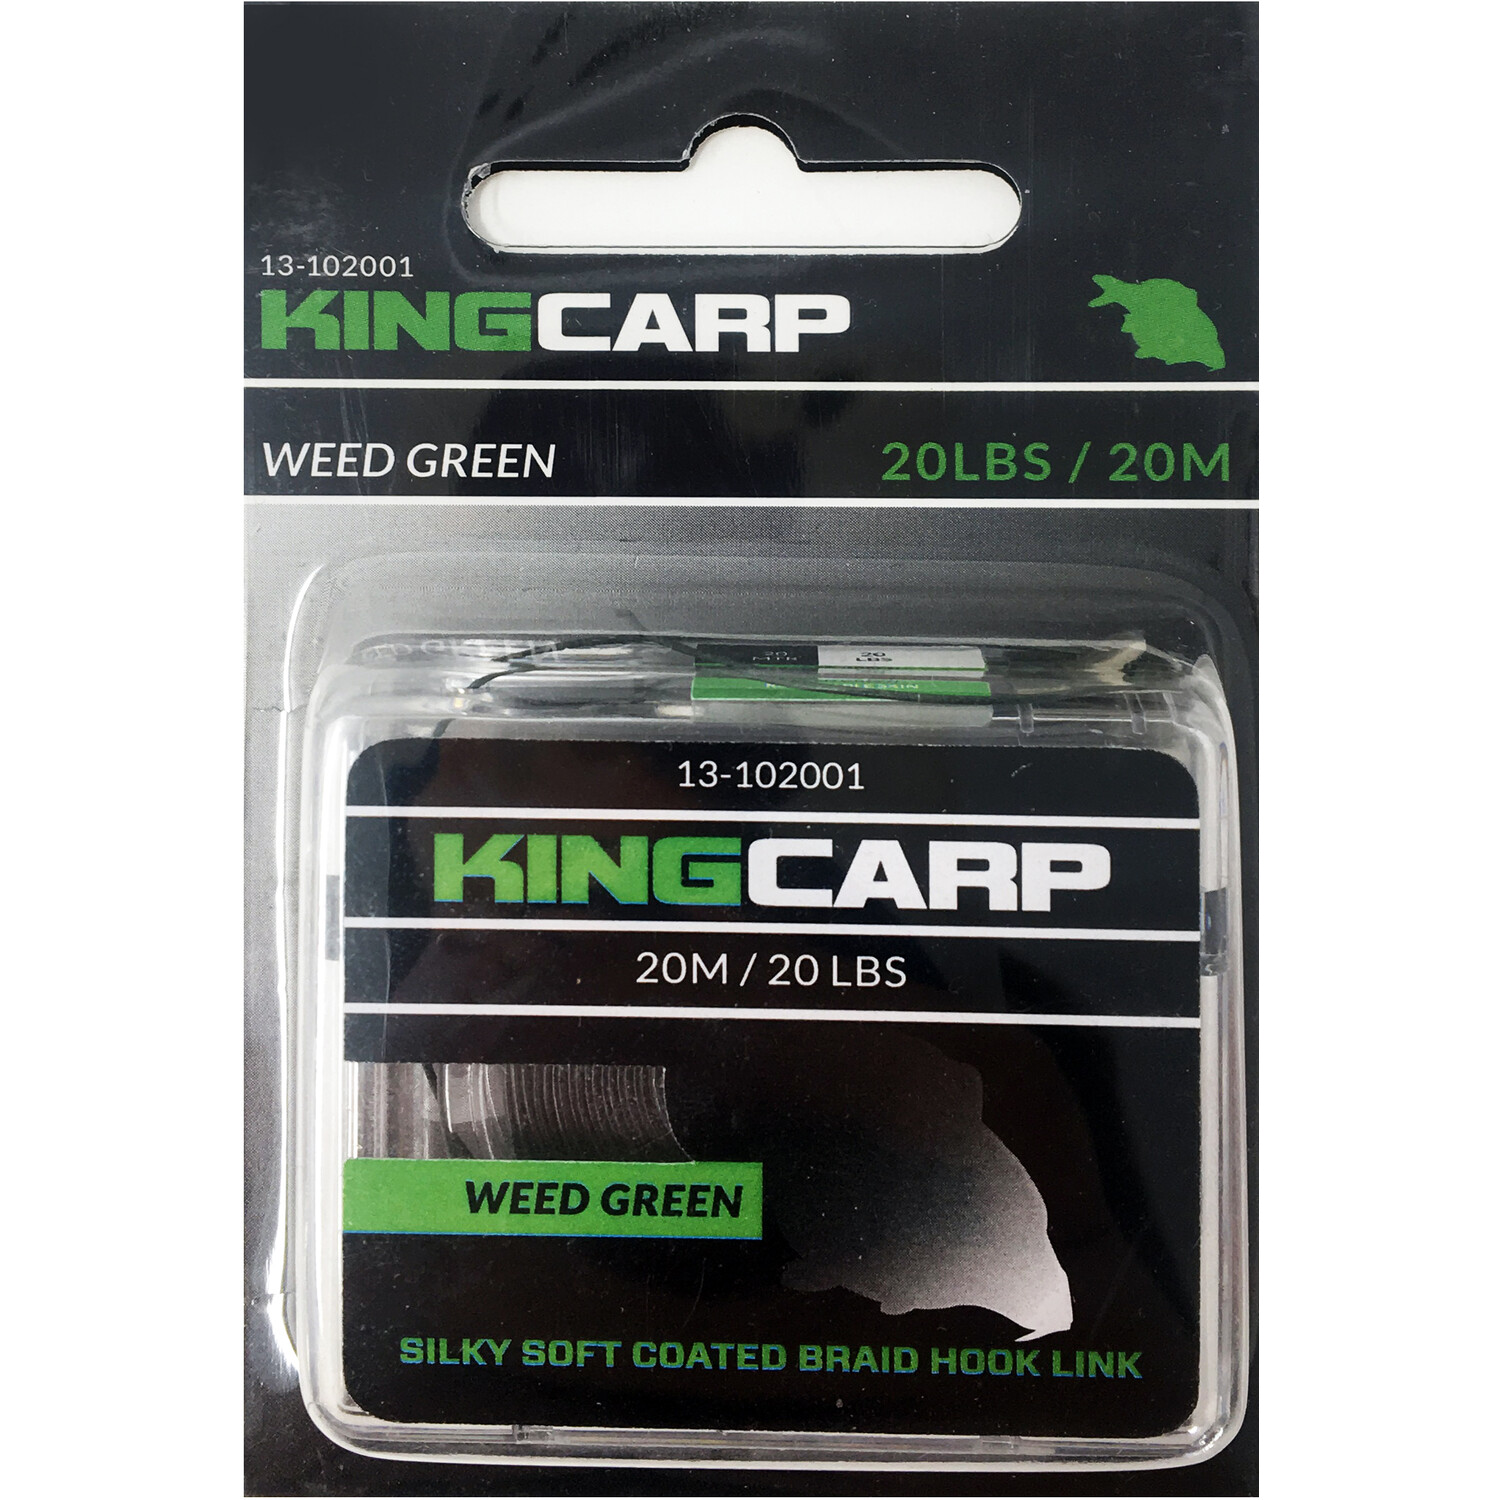 Weed Green King Carp Coated Braid Hook Link Image 2